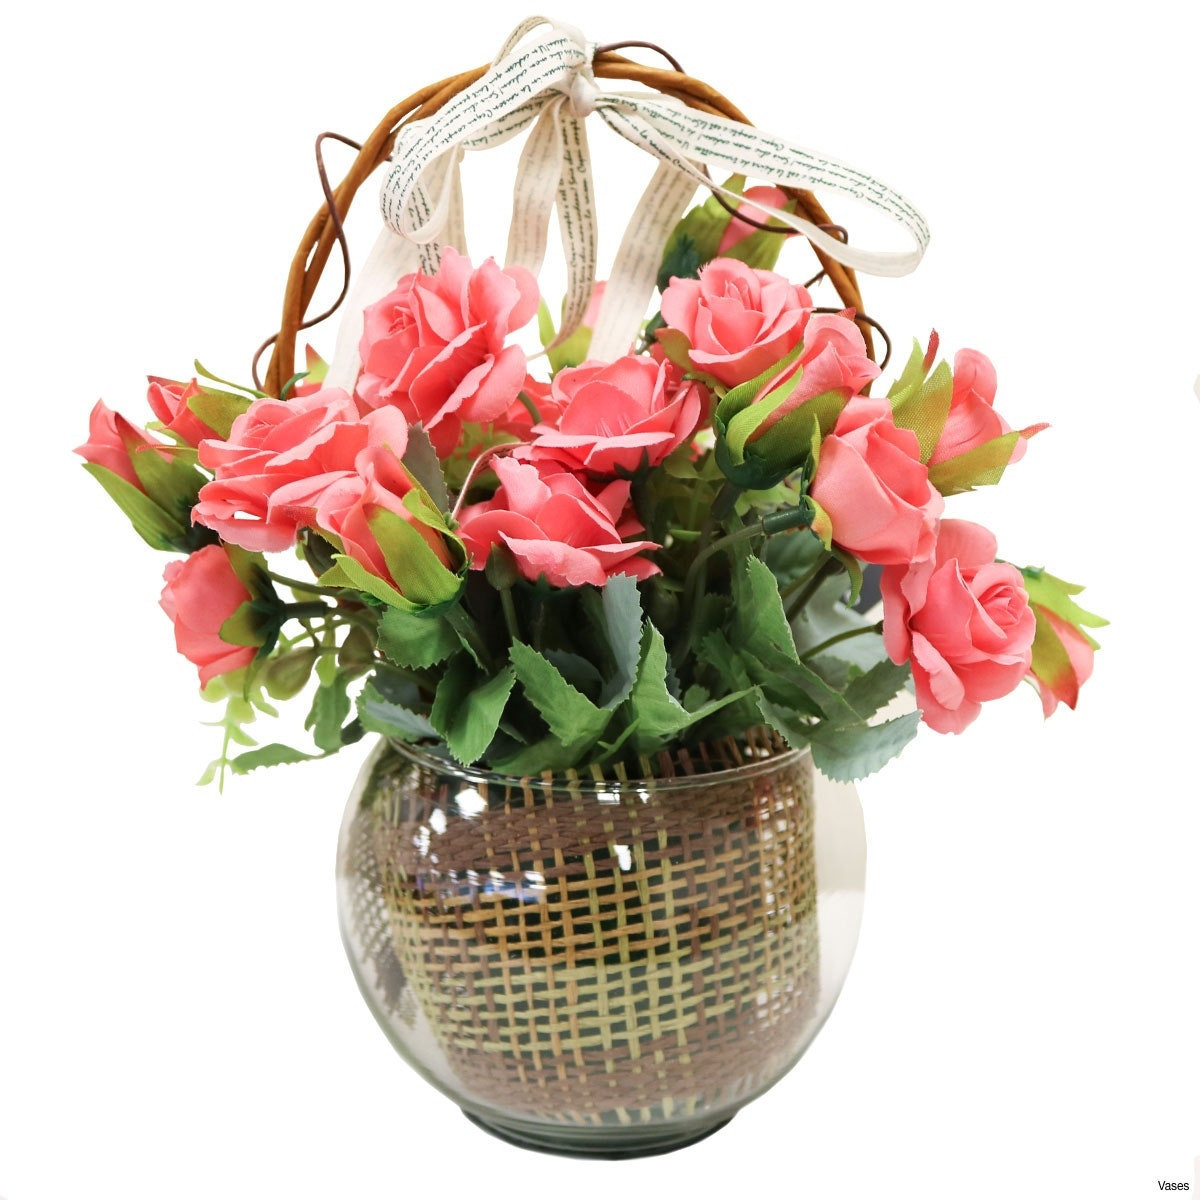 Decorative Flowers for Floor Vases Of 30 Elegant Flower Basket Decoration Flower Decoration Ideas within Bf142 11km 1200x1200h Vases Pink Flower Vase I 0d Gold Inspiration